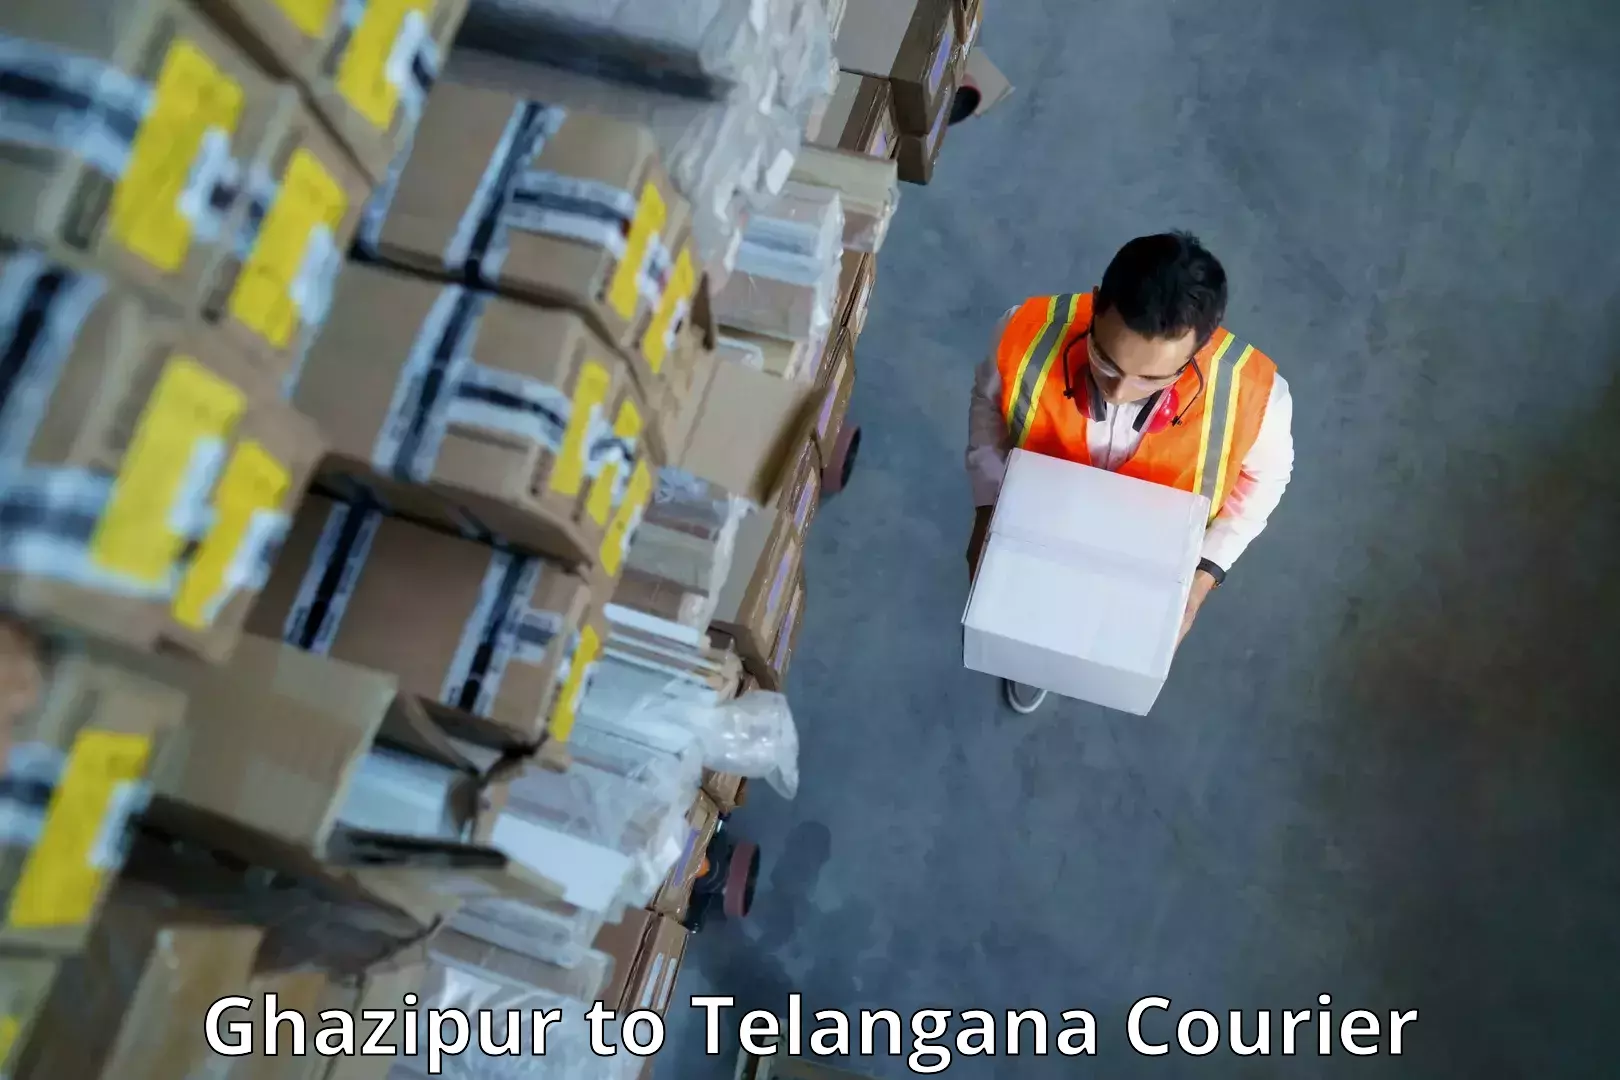 Global logistics network Ghazipur to Kakeshwaram